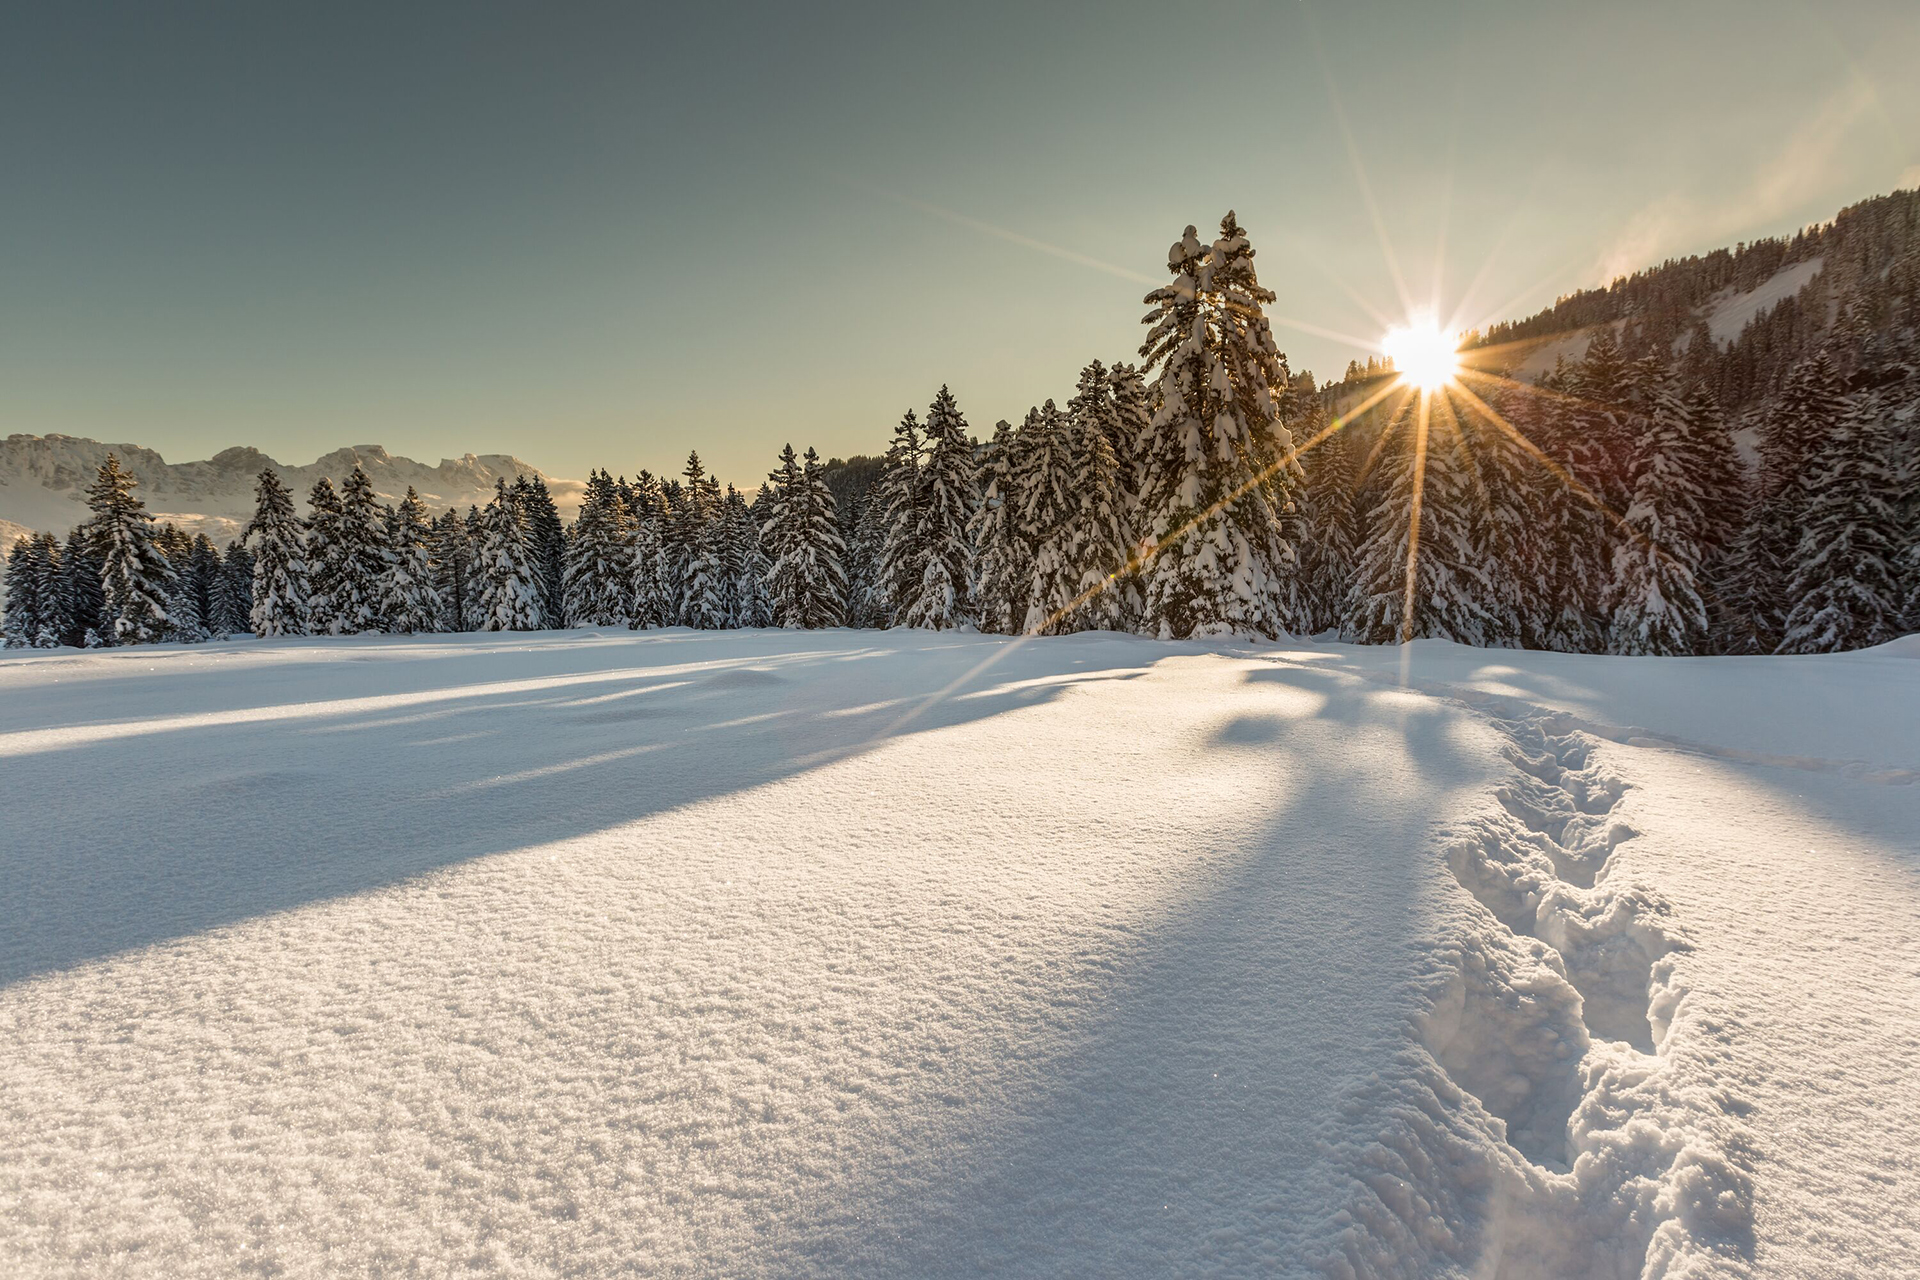 Wer es weniger sportlich angehen mag, genießt einfach die herrliche Winterlandschaft am Flumserberg | Foto: Thomas Kessler Visuals